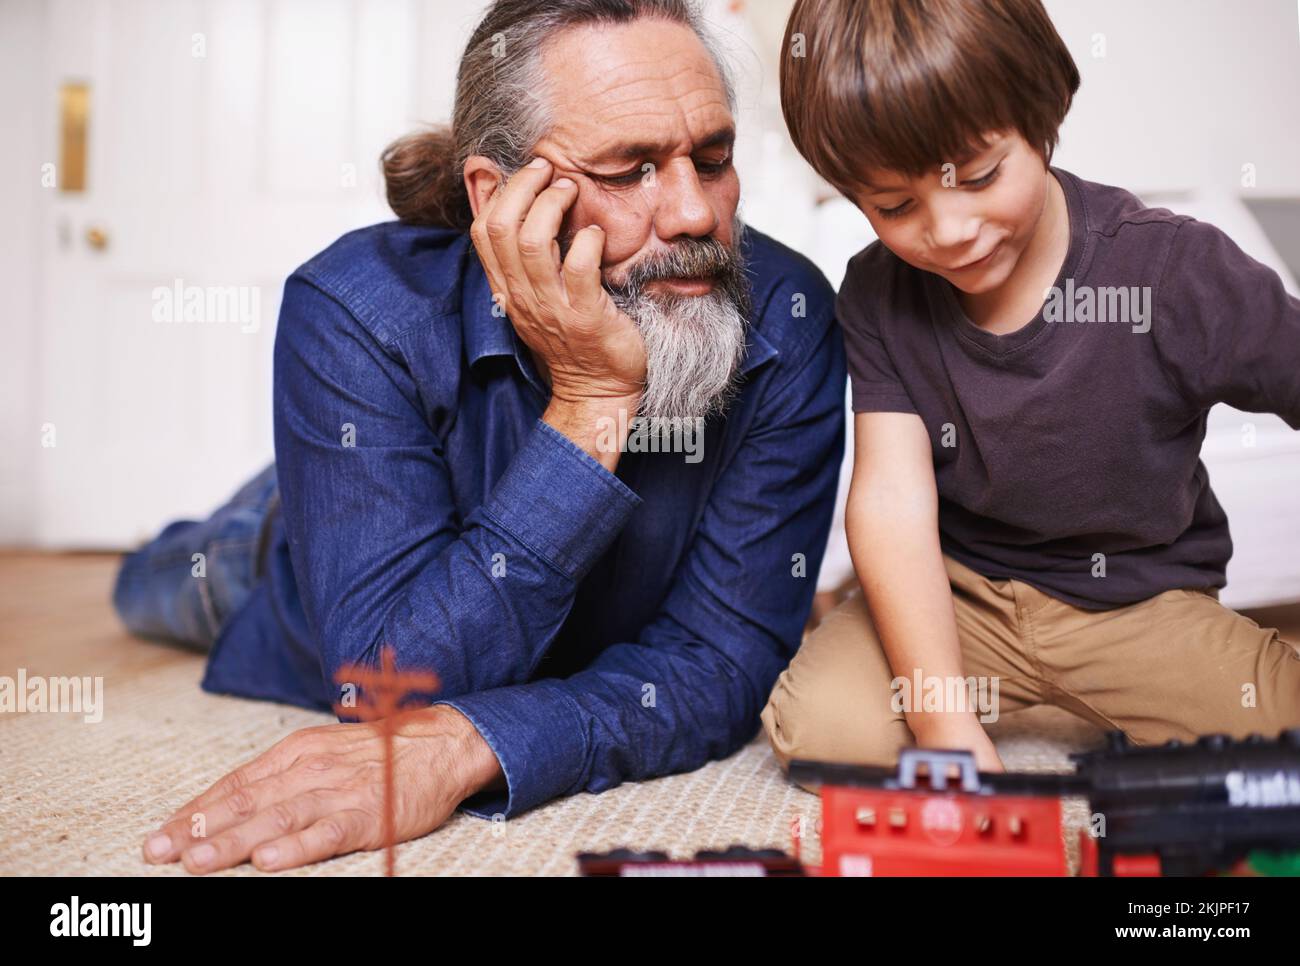 Erinnerungen an seine Kindheit. Ein Großvater, der seinem Enkel beim Spielen mit einem Spielzeugzug zusieht. Stockfoto